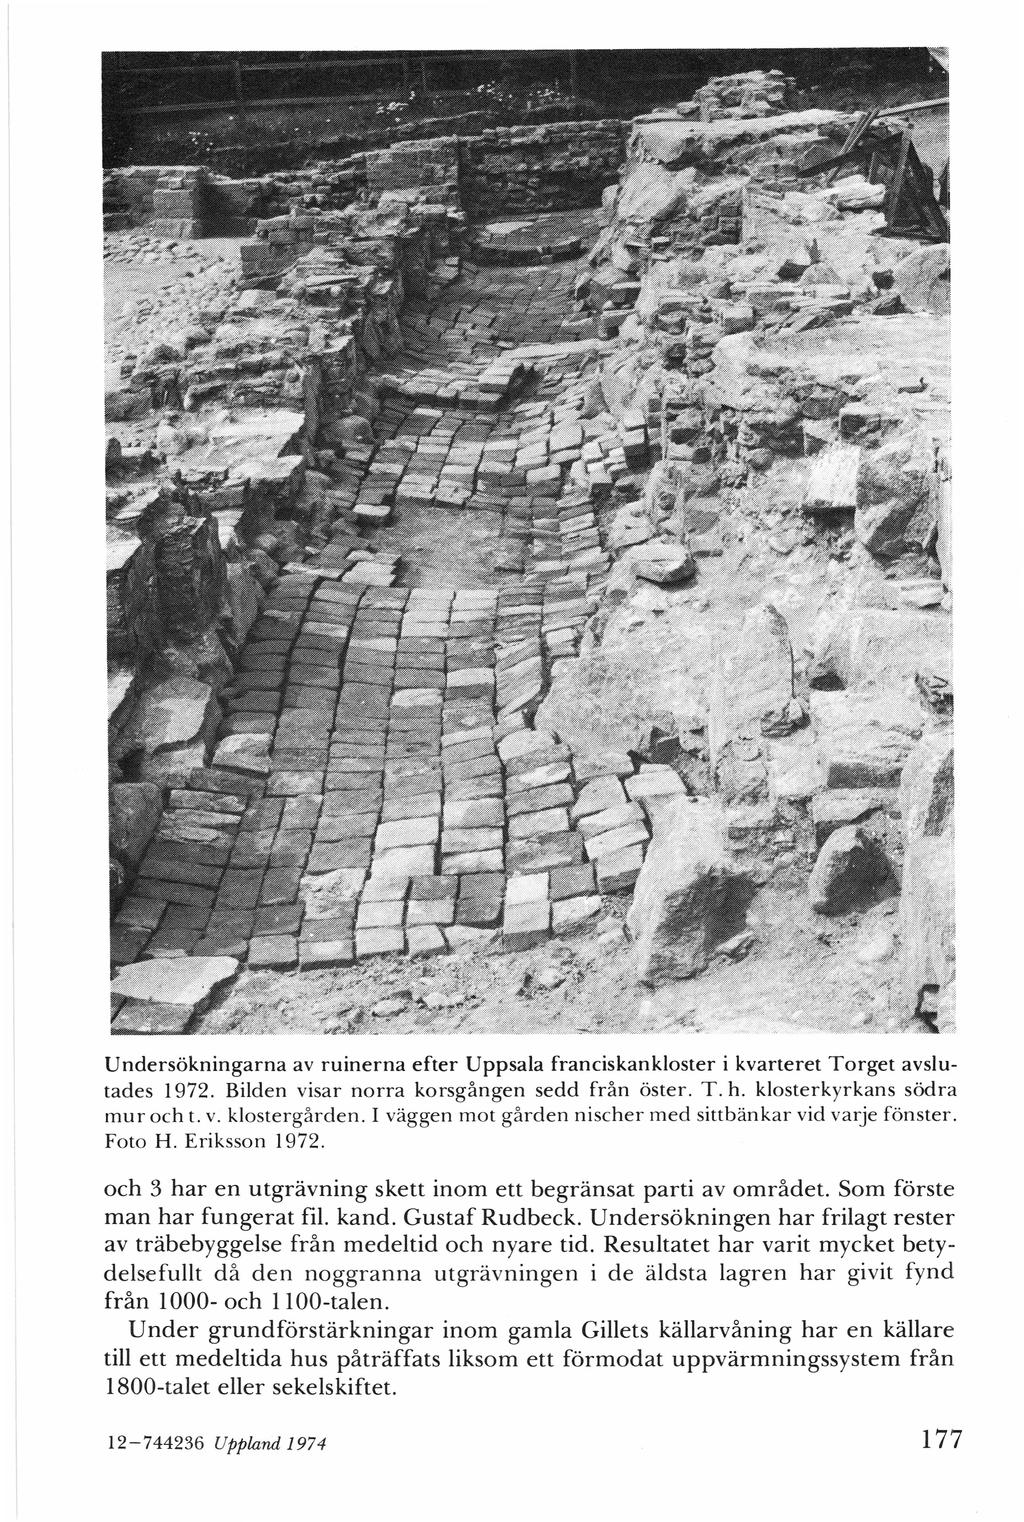 Undersökningarna av ruinerna efter Uppsala franciskankloster i kvarteret Torget avslutades I 972. Bilden visar norra korsgången sedd från öster. T. h. klosterkyrkans södra mur och t.v. klostergården.